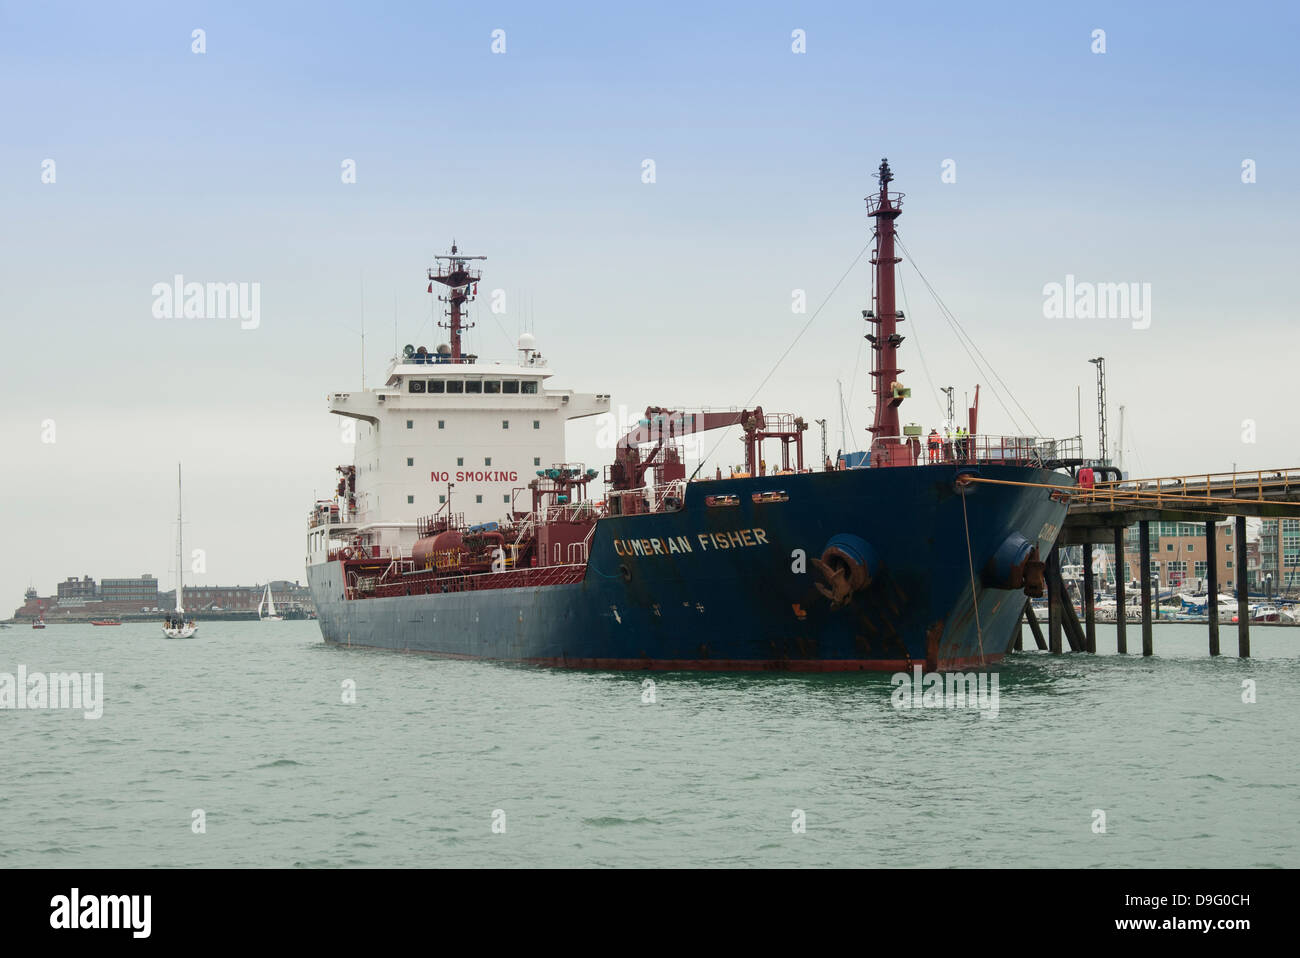 Die Cumbrian Fisher-Öl-Tanker vor Anker im Hafen von Portsmouth, Gosport, UK Stockfoto